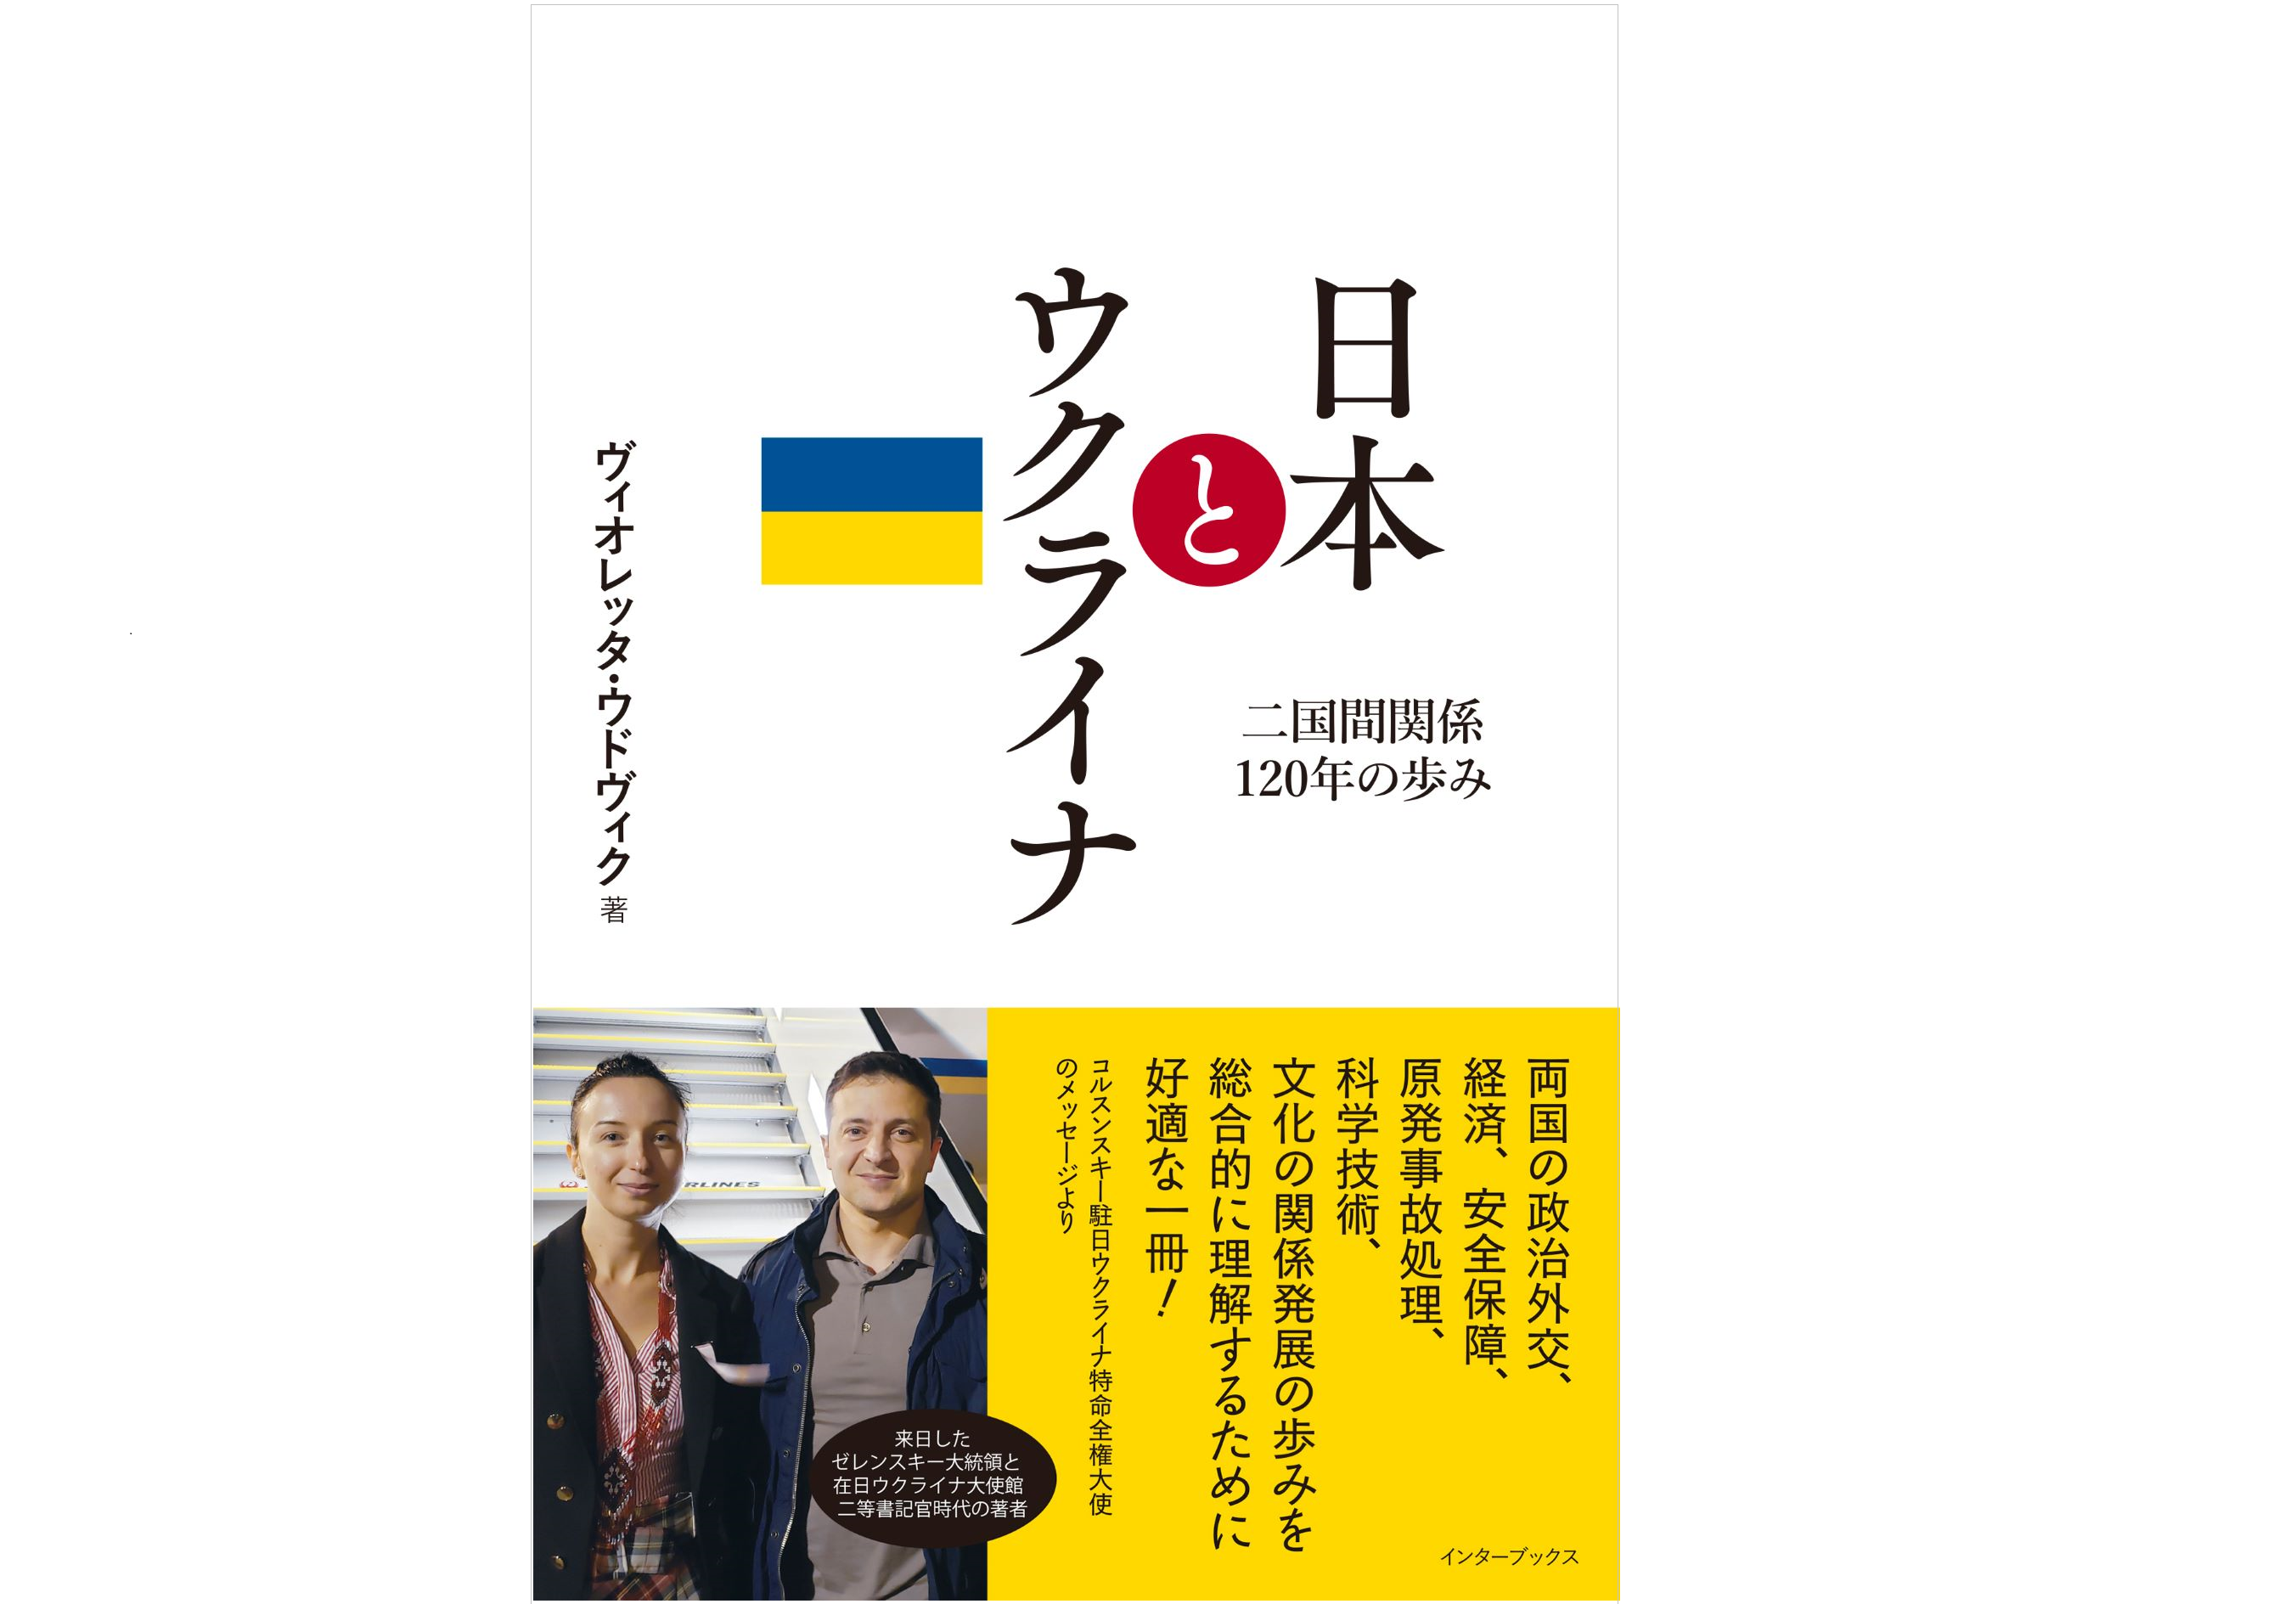 http://元外交官の著者と日ウ交流史の第一人者が語る『日本とウクライナ%20二国間関係120年の歩み』出版記念オンライントーク%2012月16日（金）開催